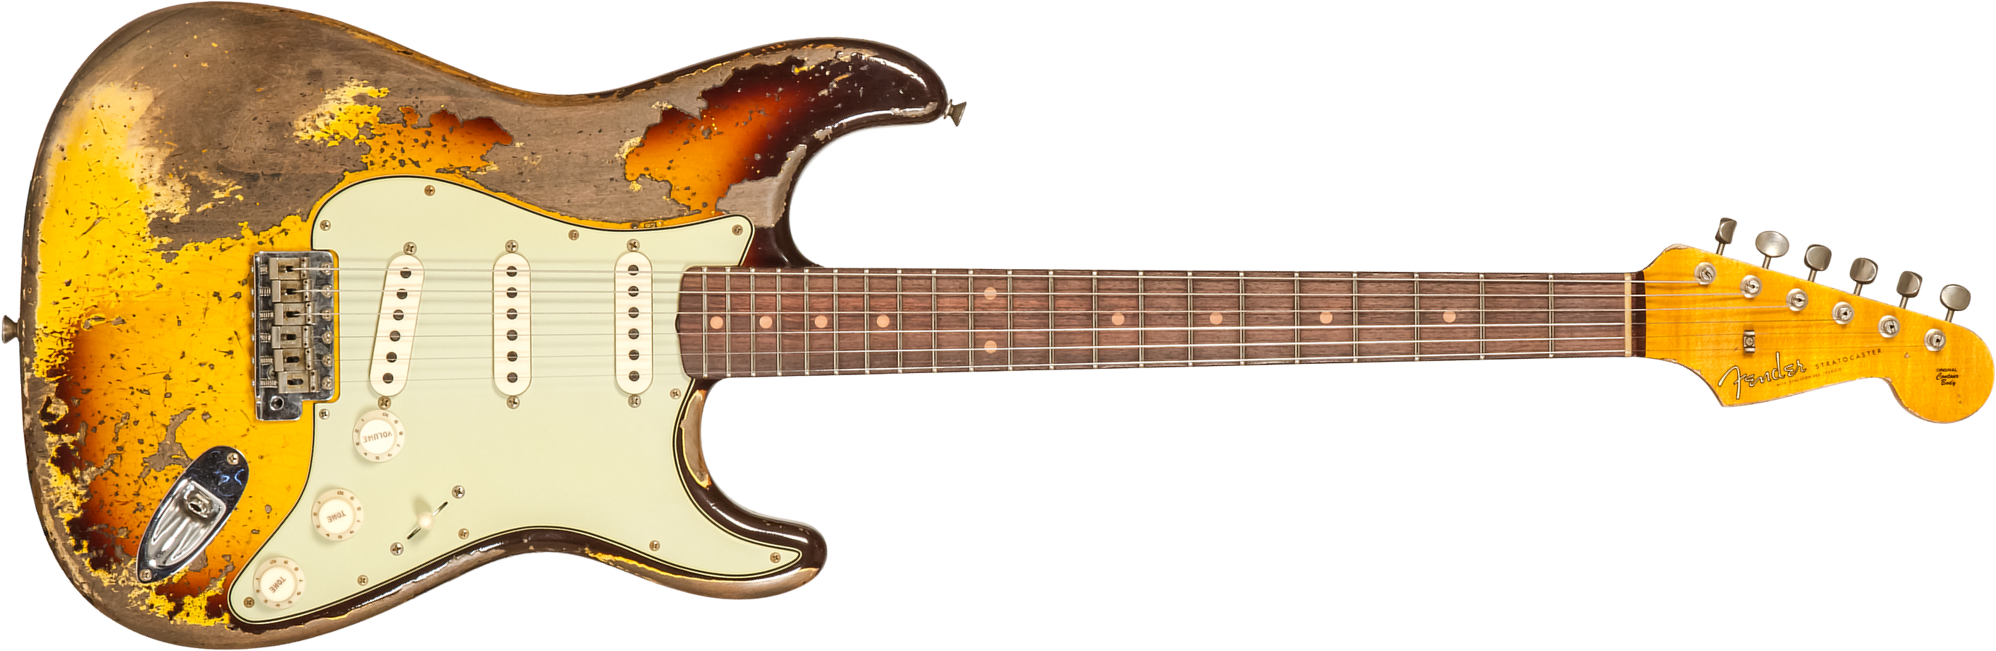 Fender Custom Shop Strat 1959 3s Trem Rw #cz569850 - Super Heavy Relic Aged Chocolate 3-color Sunburst - Str shape electric guitar - Main picture